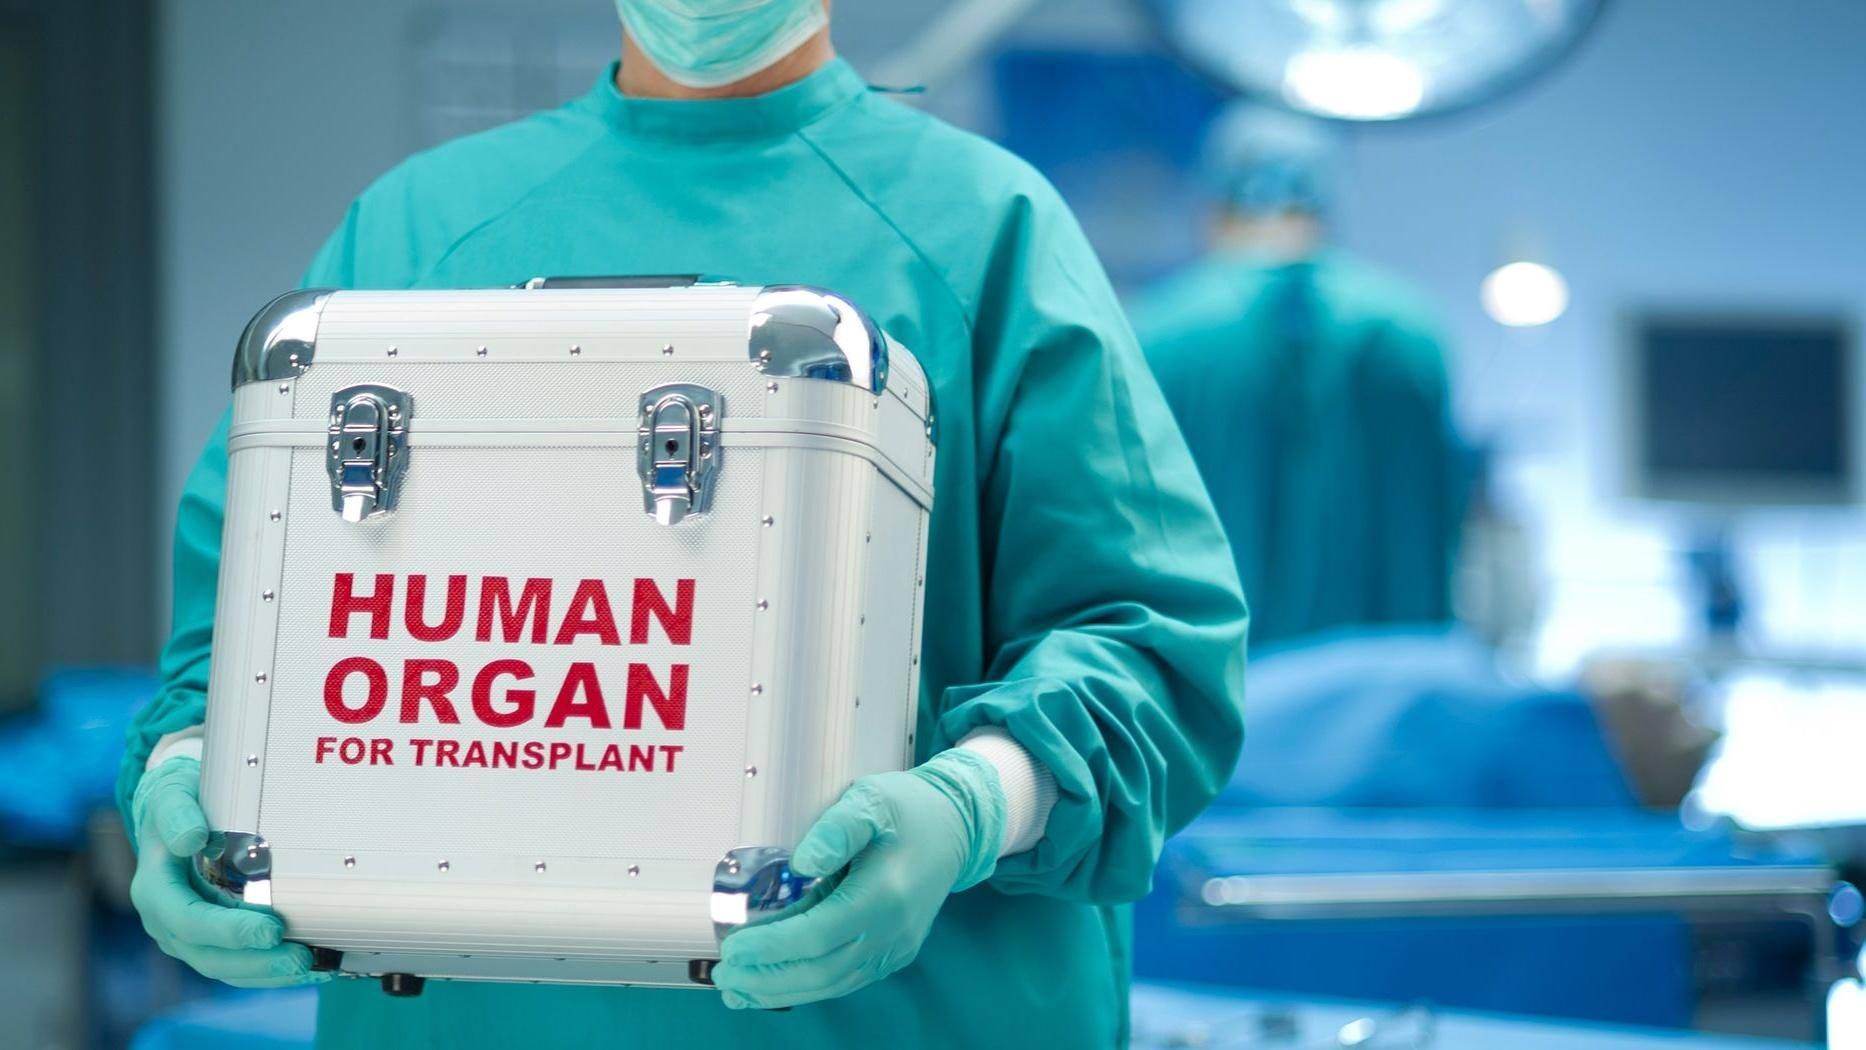 Конец дефицита донорских органов: ученые смогли восстановить поврежденные легкие